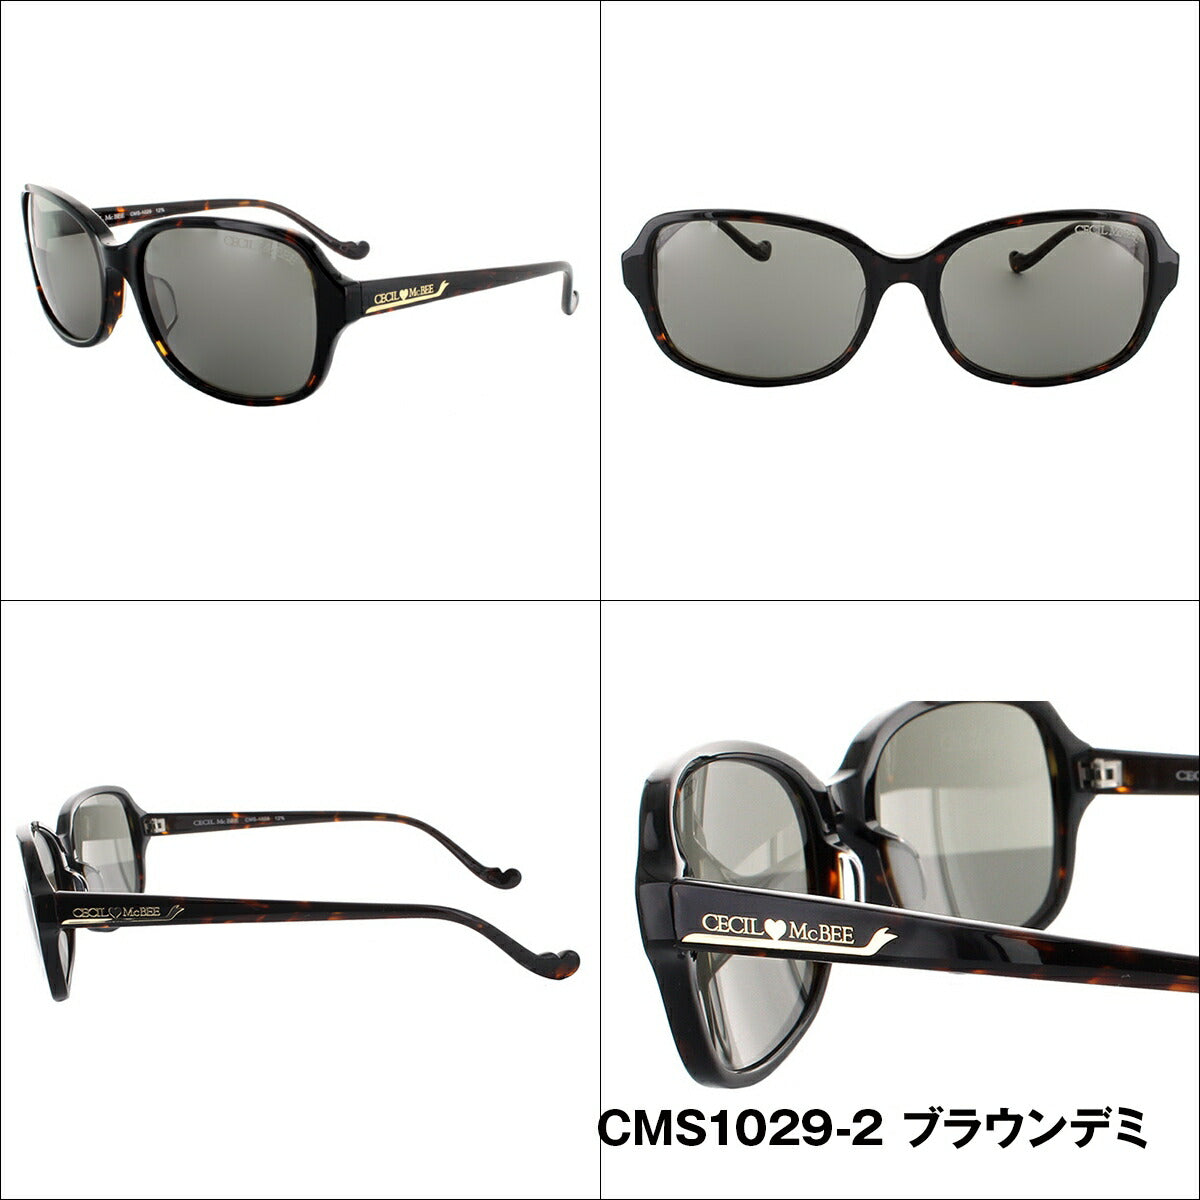 レディース サングラス CECIL McBEE セシルマクビー CMS 1029 全3色 56サイズ アジアンフィット 女性 UVカット 紫外線 対策 ブランド 眼鏡 メガネ アイウェア 人気 おすすめ ラッピング無料